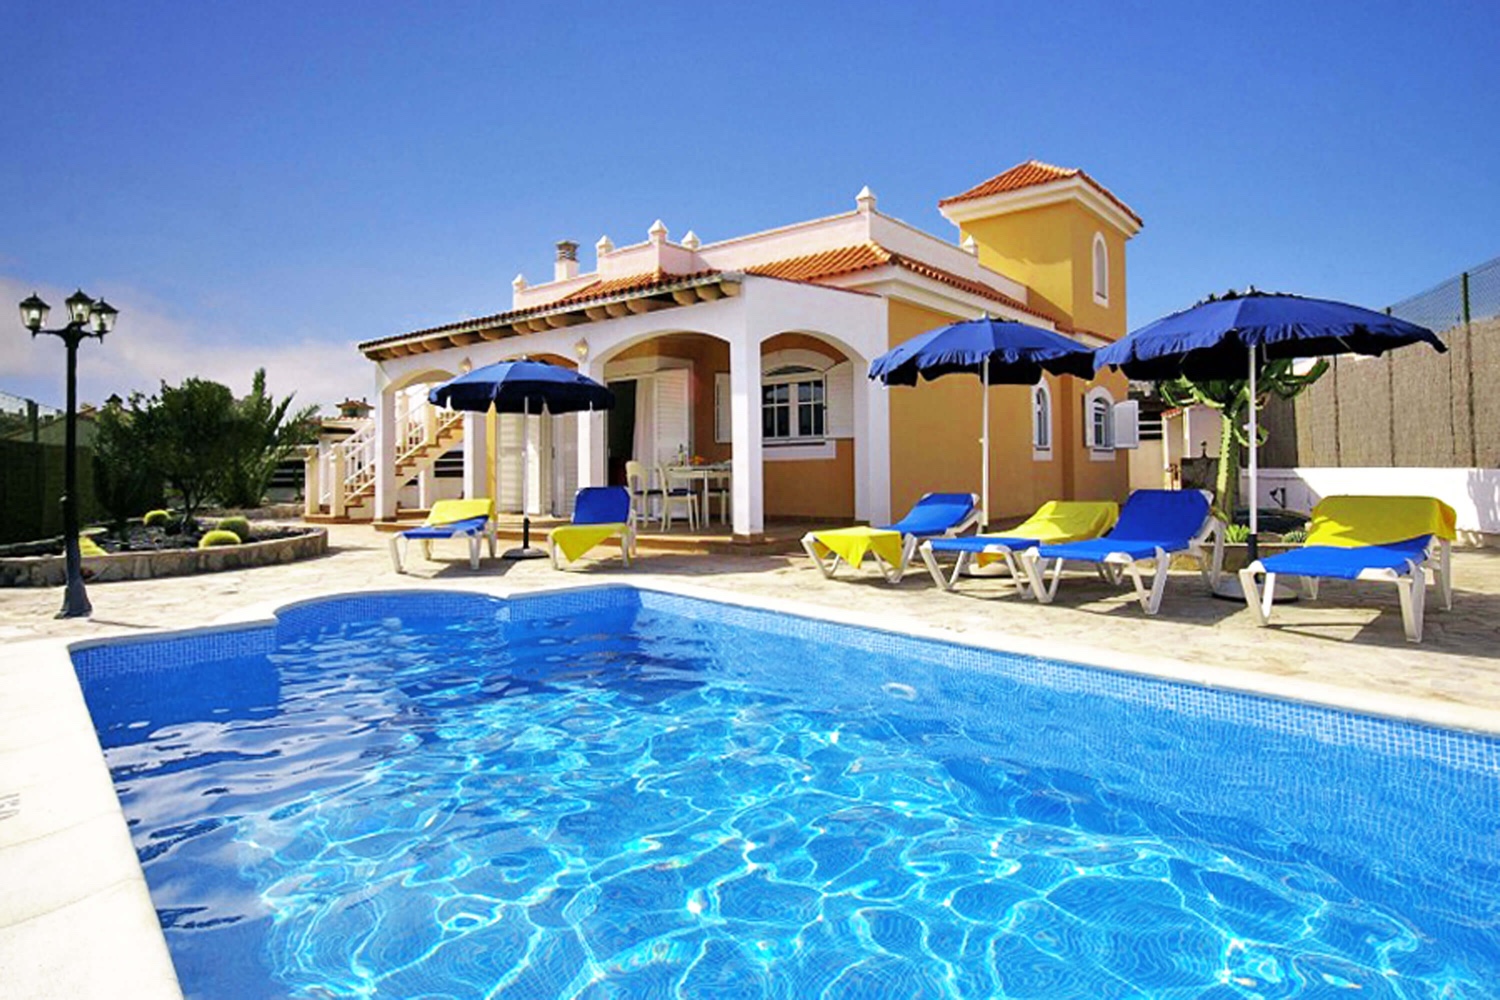 Elegante Villen im spanischen Stil mit drei Schlafzimmern und eigenem Pool neben dem gepflegten Golfplatz von Calta de Fuste